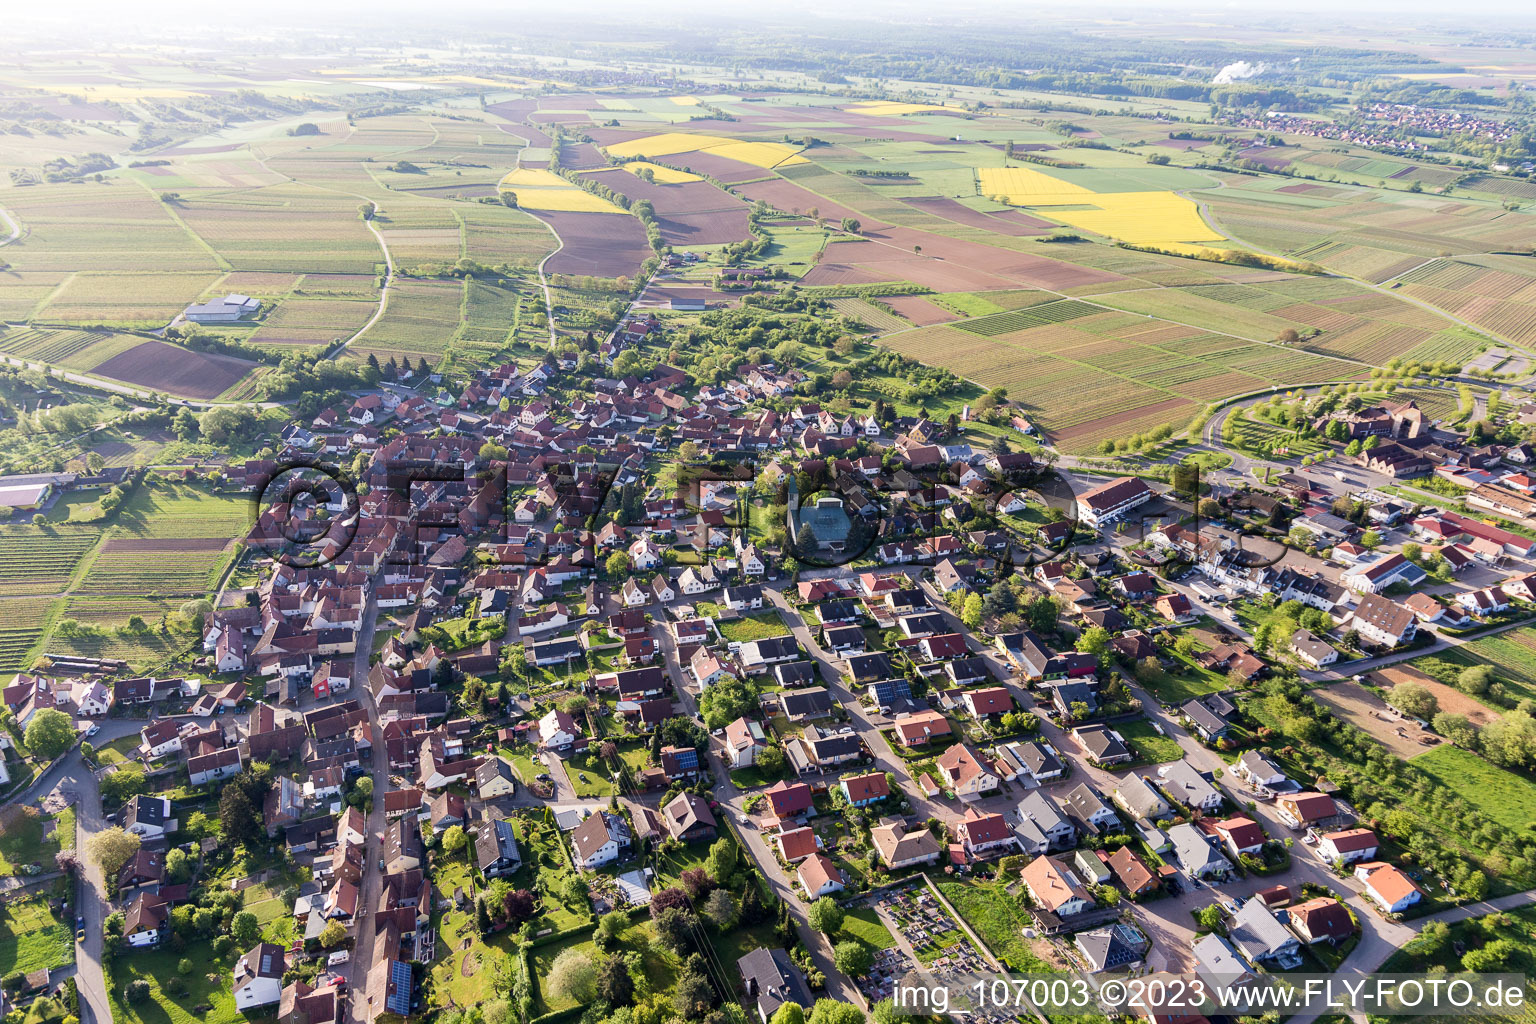 Drone recording of District Schweigen in Schweigen-Rechtenbach in the state Rhineland-Palatinate, Germany